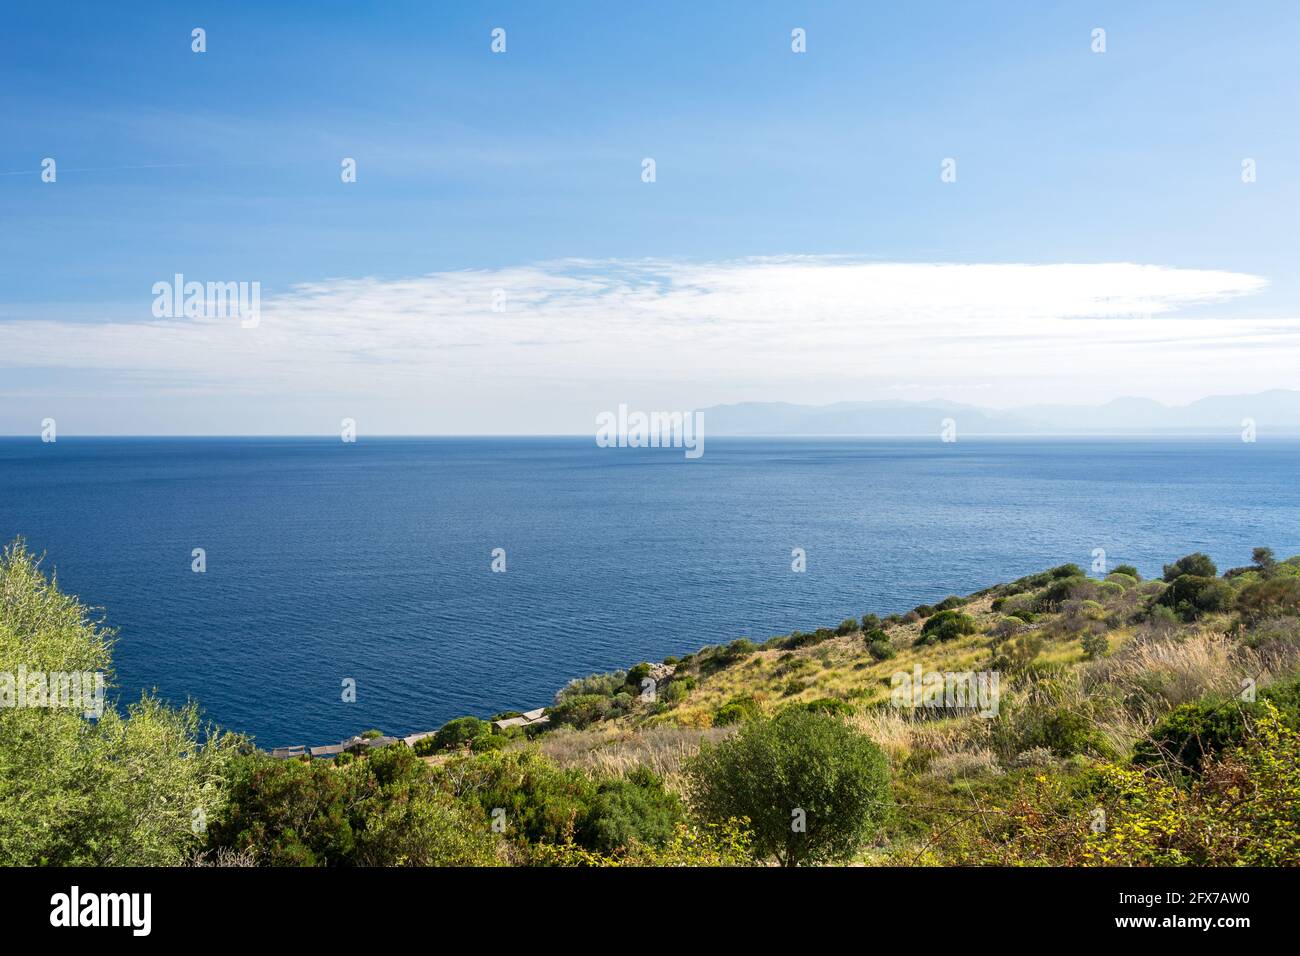 Splendido oceano blu e tipica vegetazione mediterranea nella riserva naturale di Zingaro, sulla costa siciliana Foto Stock